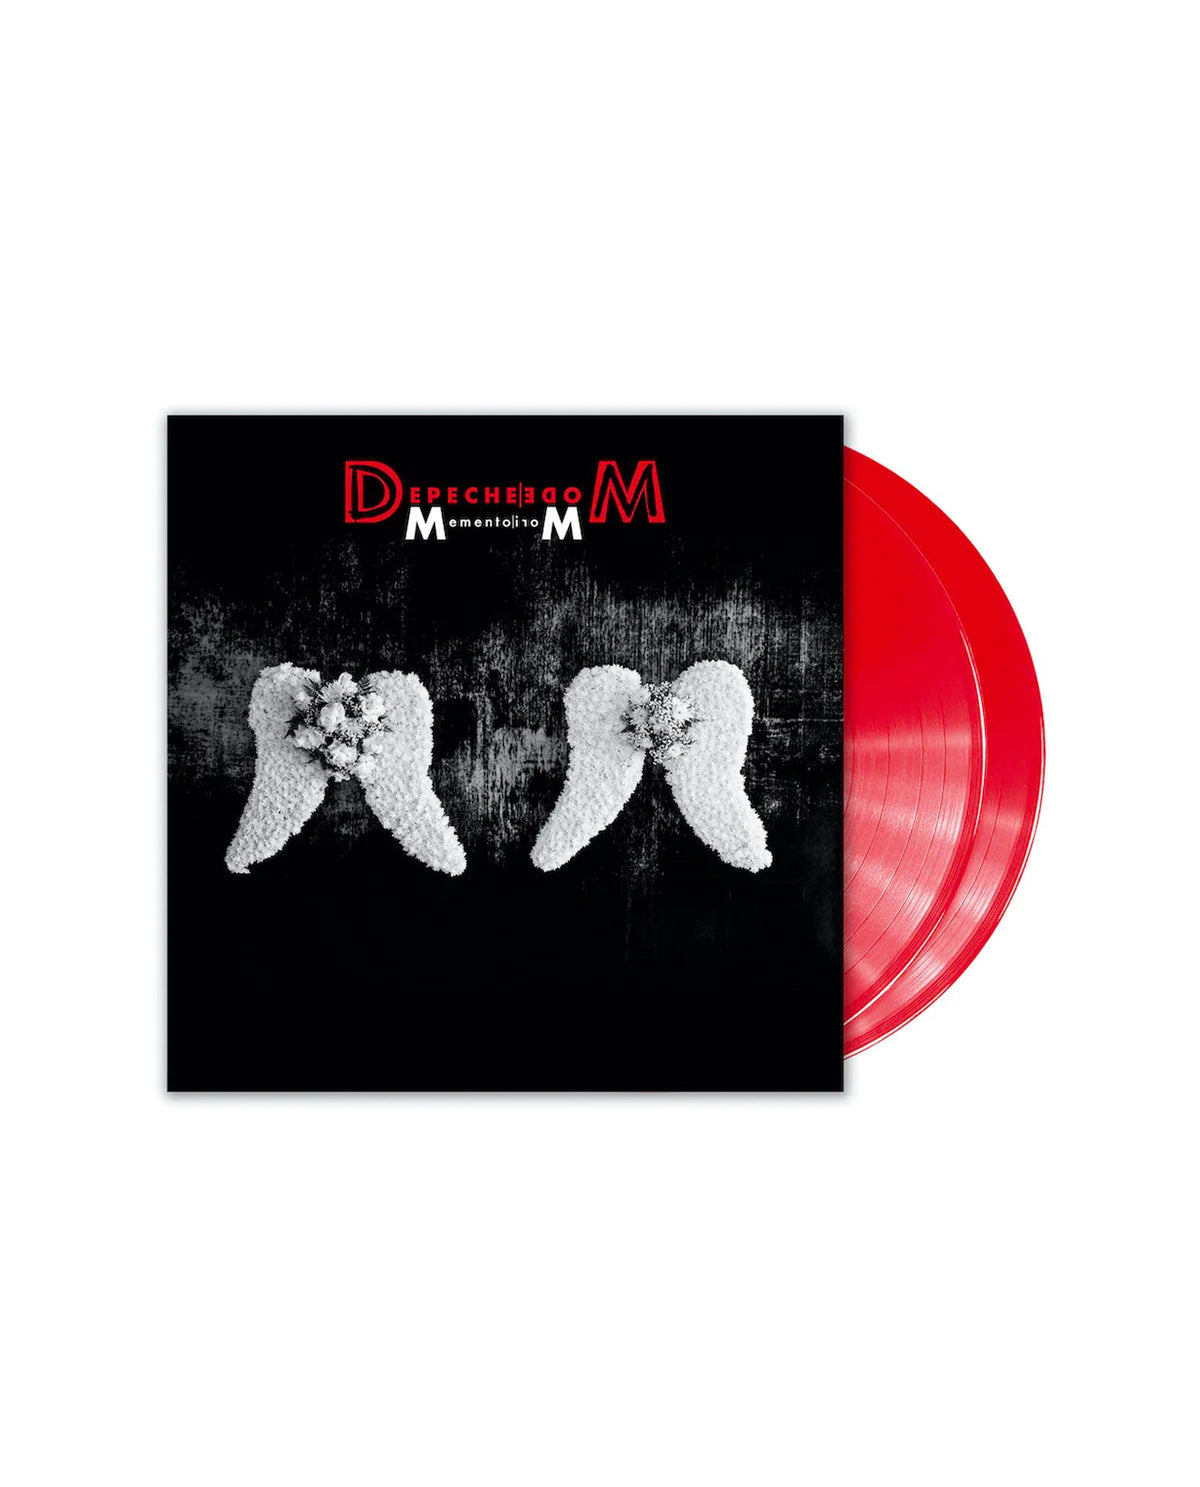 Depeche Mode - 2 LP Vinilo Red Vinyl "Memento Mori" - Rocktud - D2fy